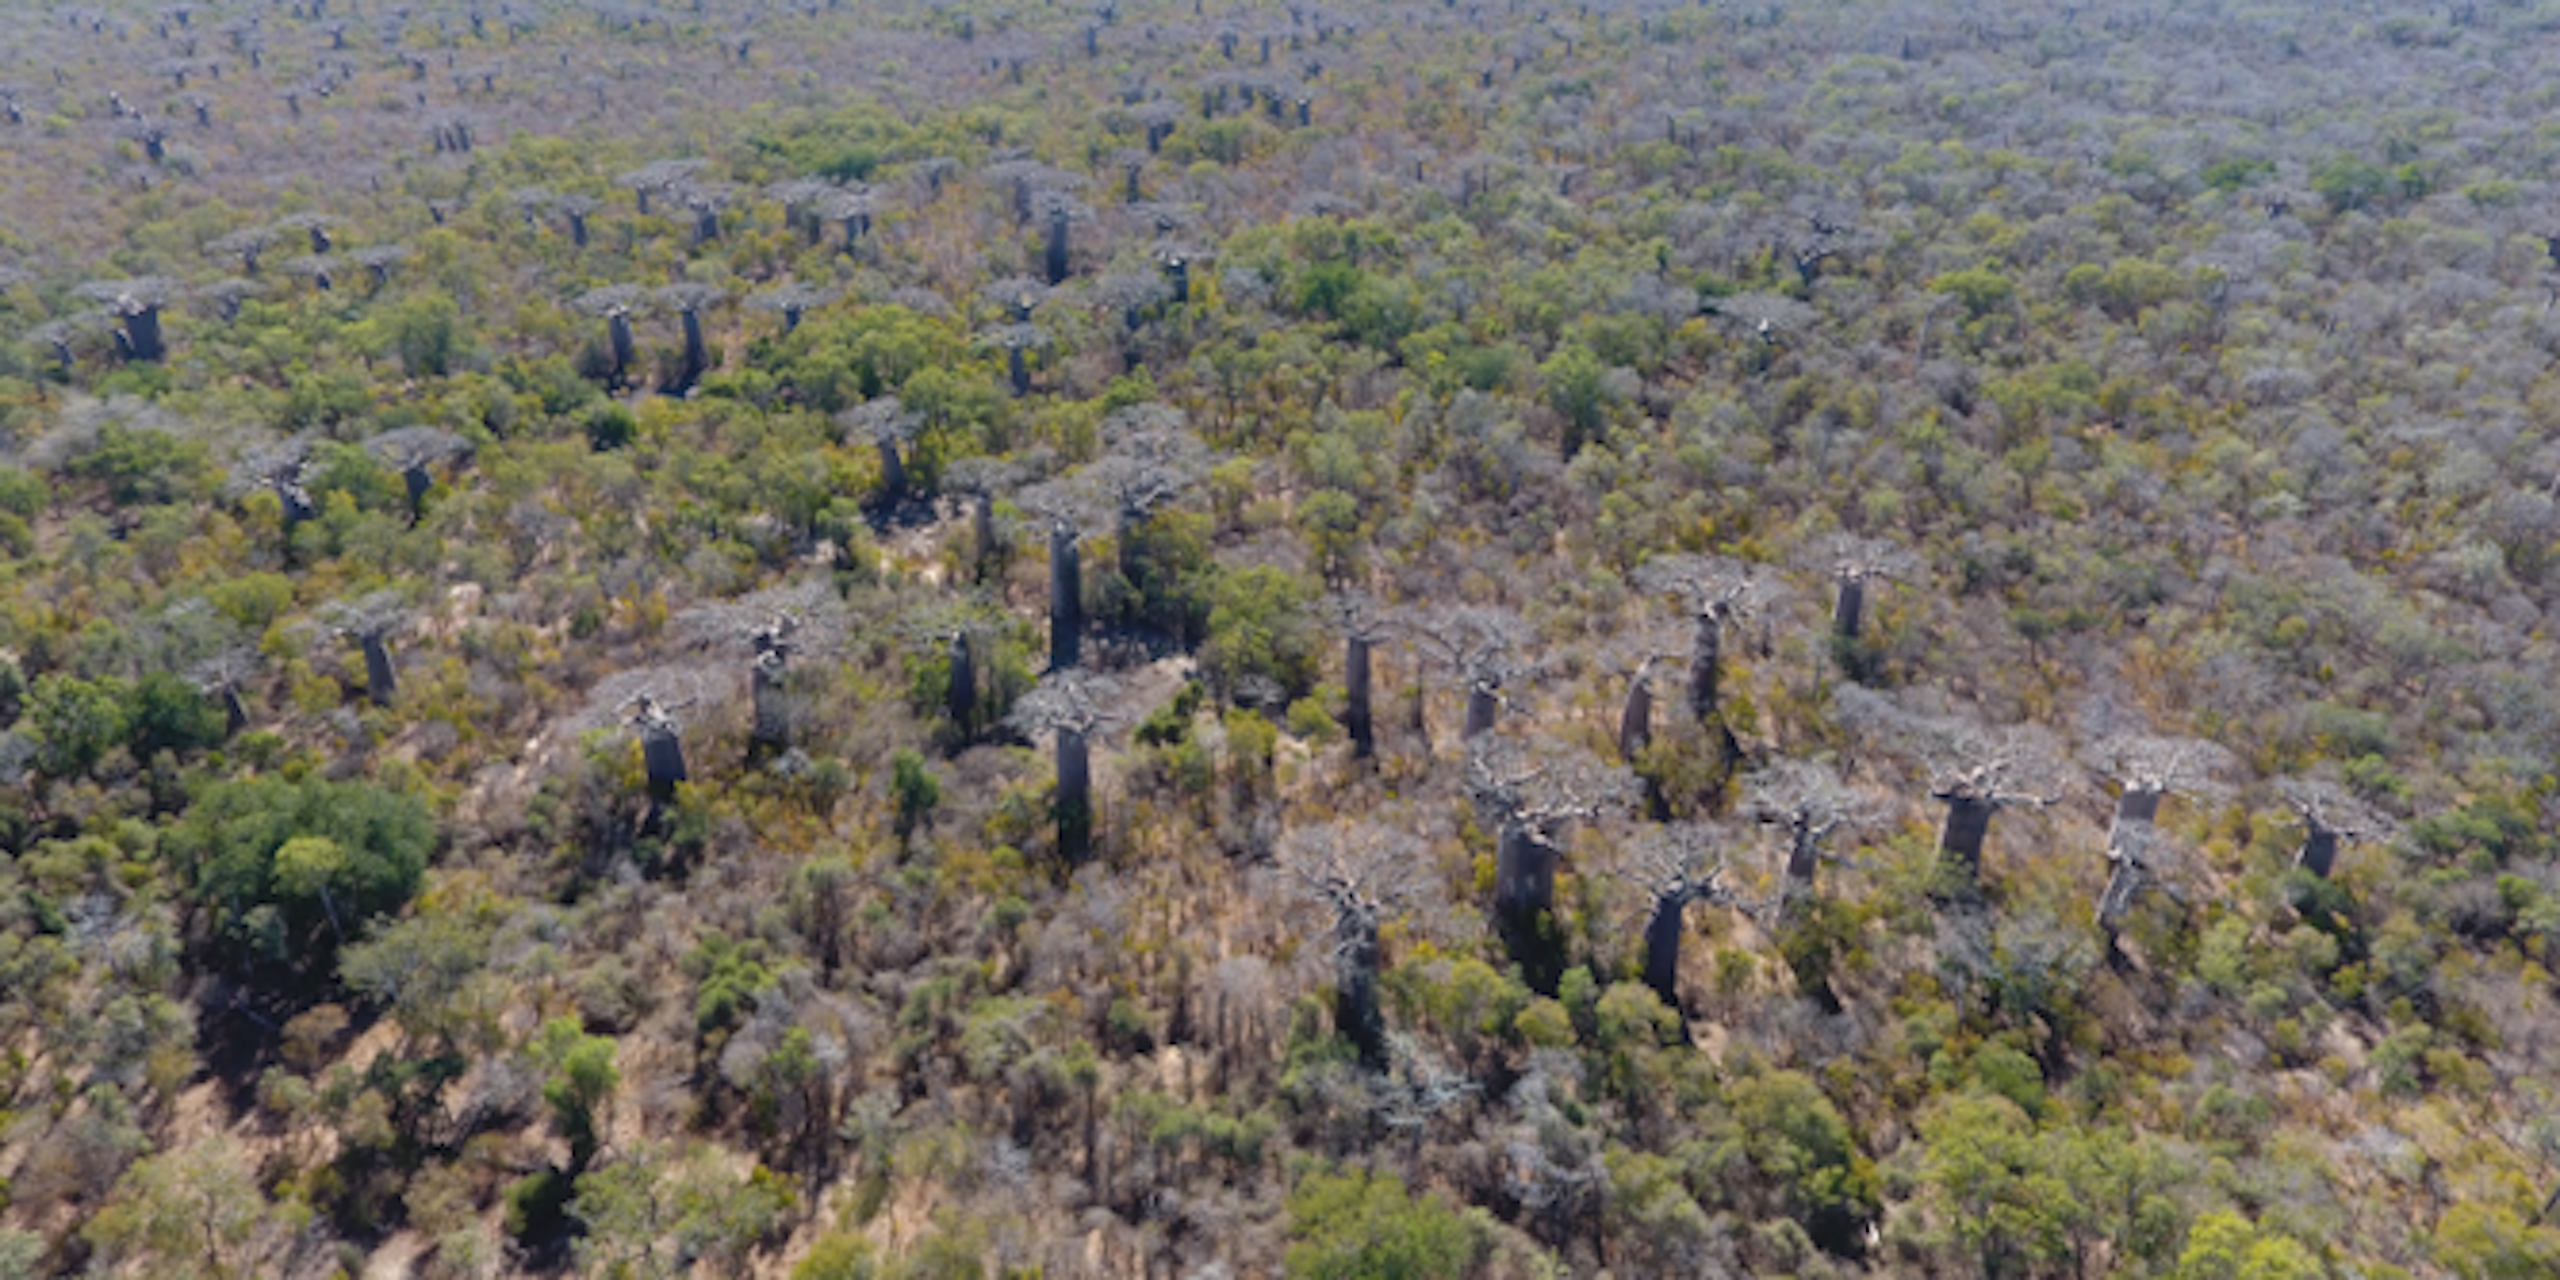 Les anciennes forêts de baobabs de Madagascar sont restaurées par les communautés, avec l'aide de l'intelligence artificielle